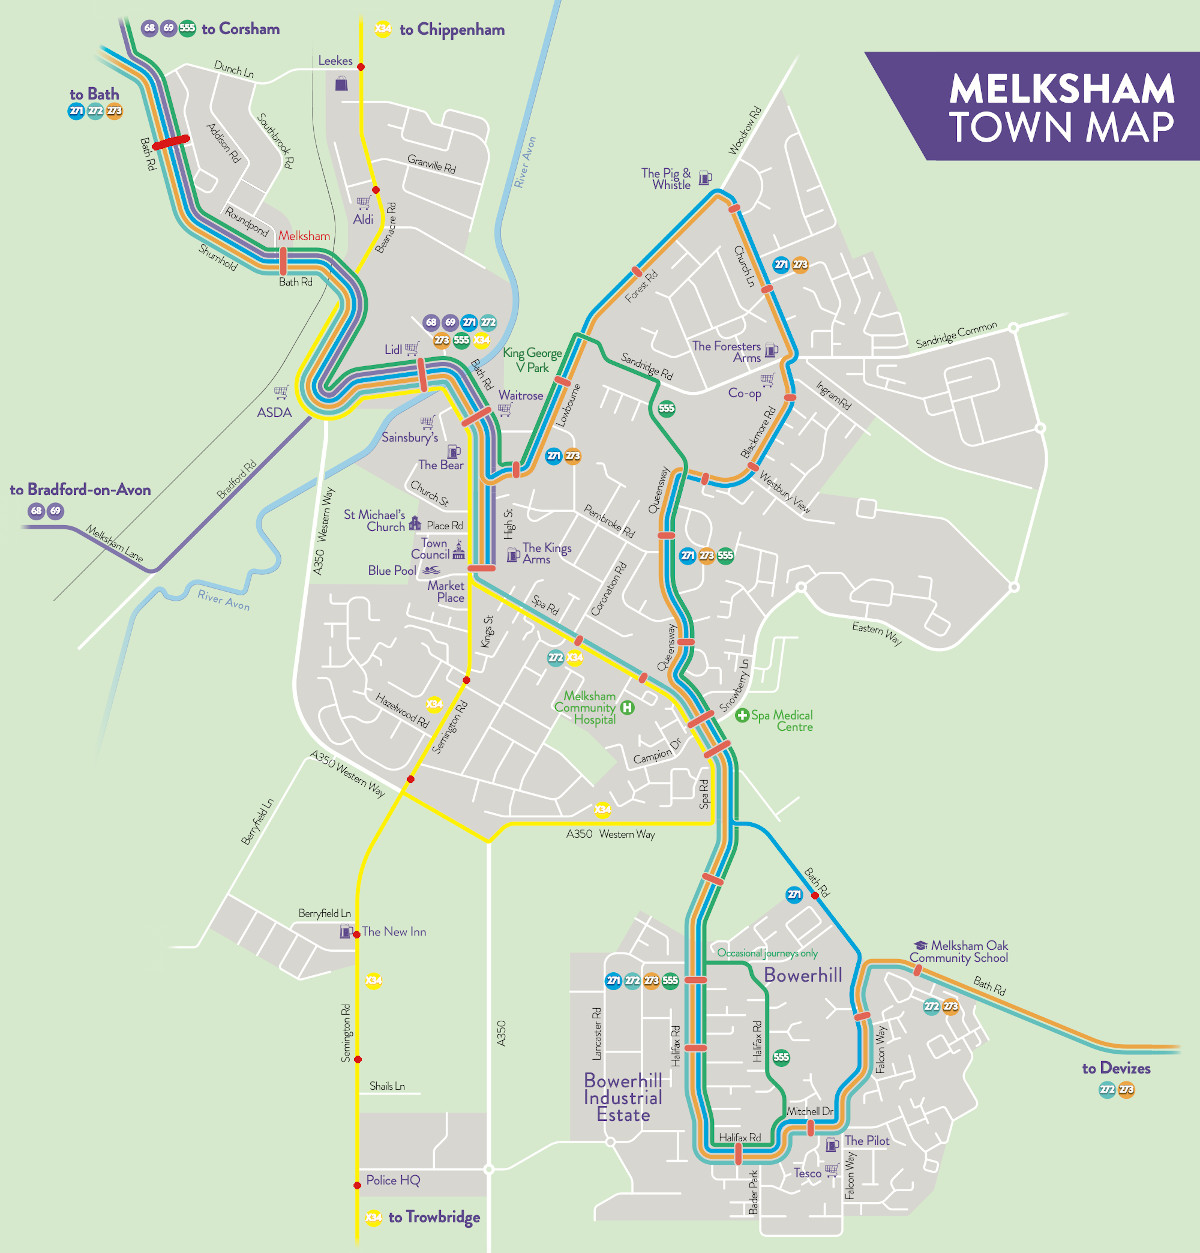 Trains at Melksham
